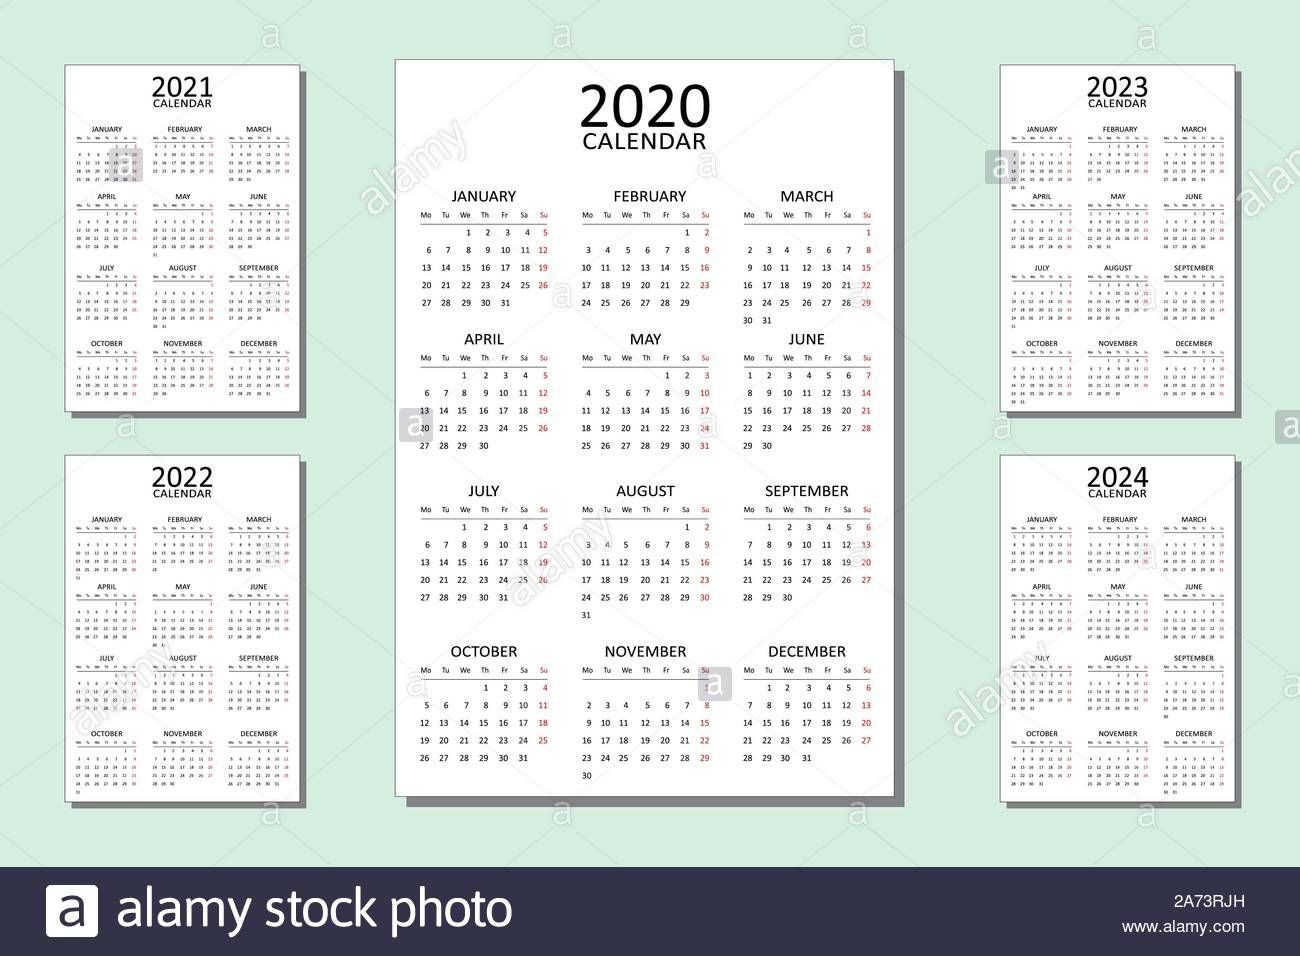 Calendario Juliano 2020 - Calendar Printable Free